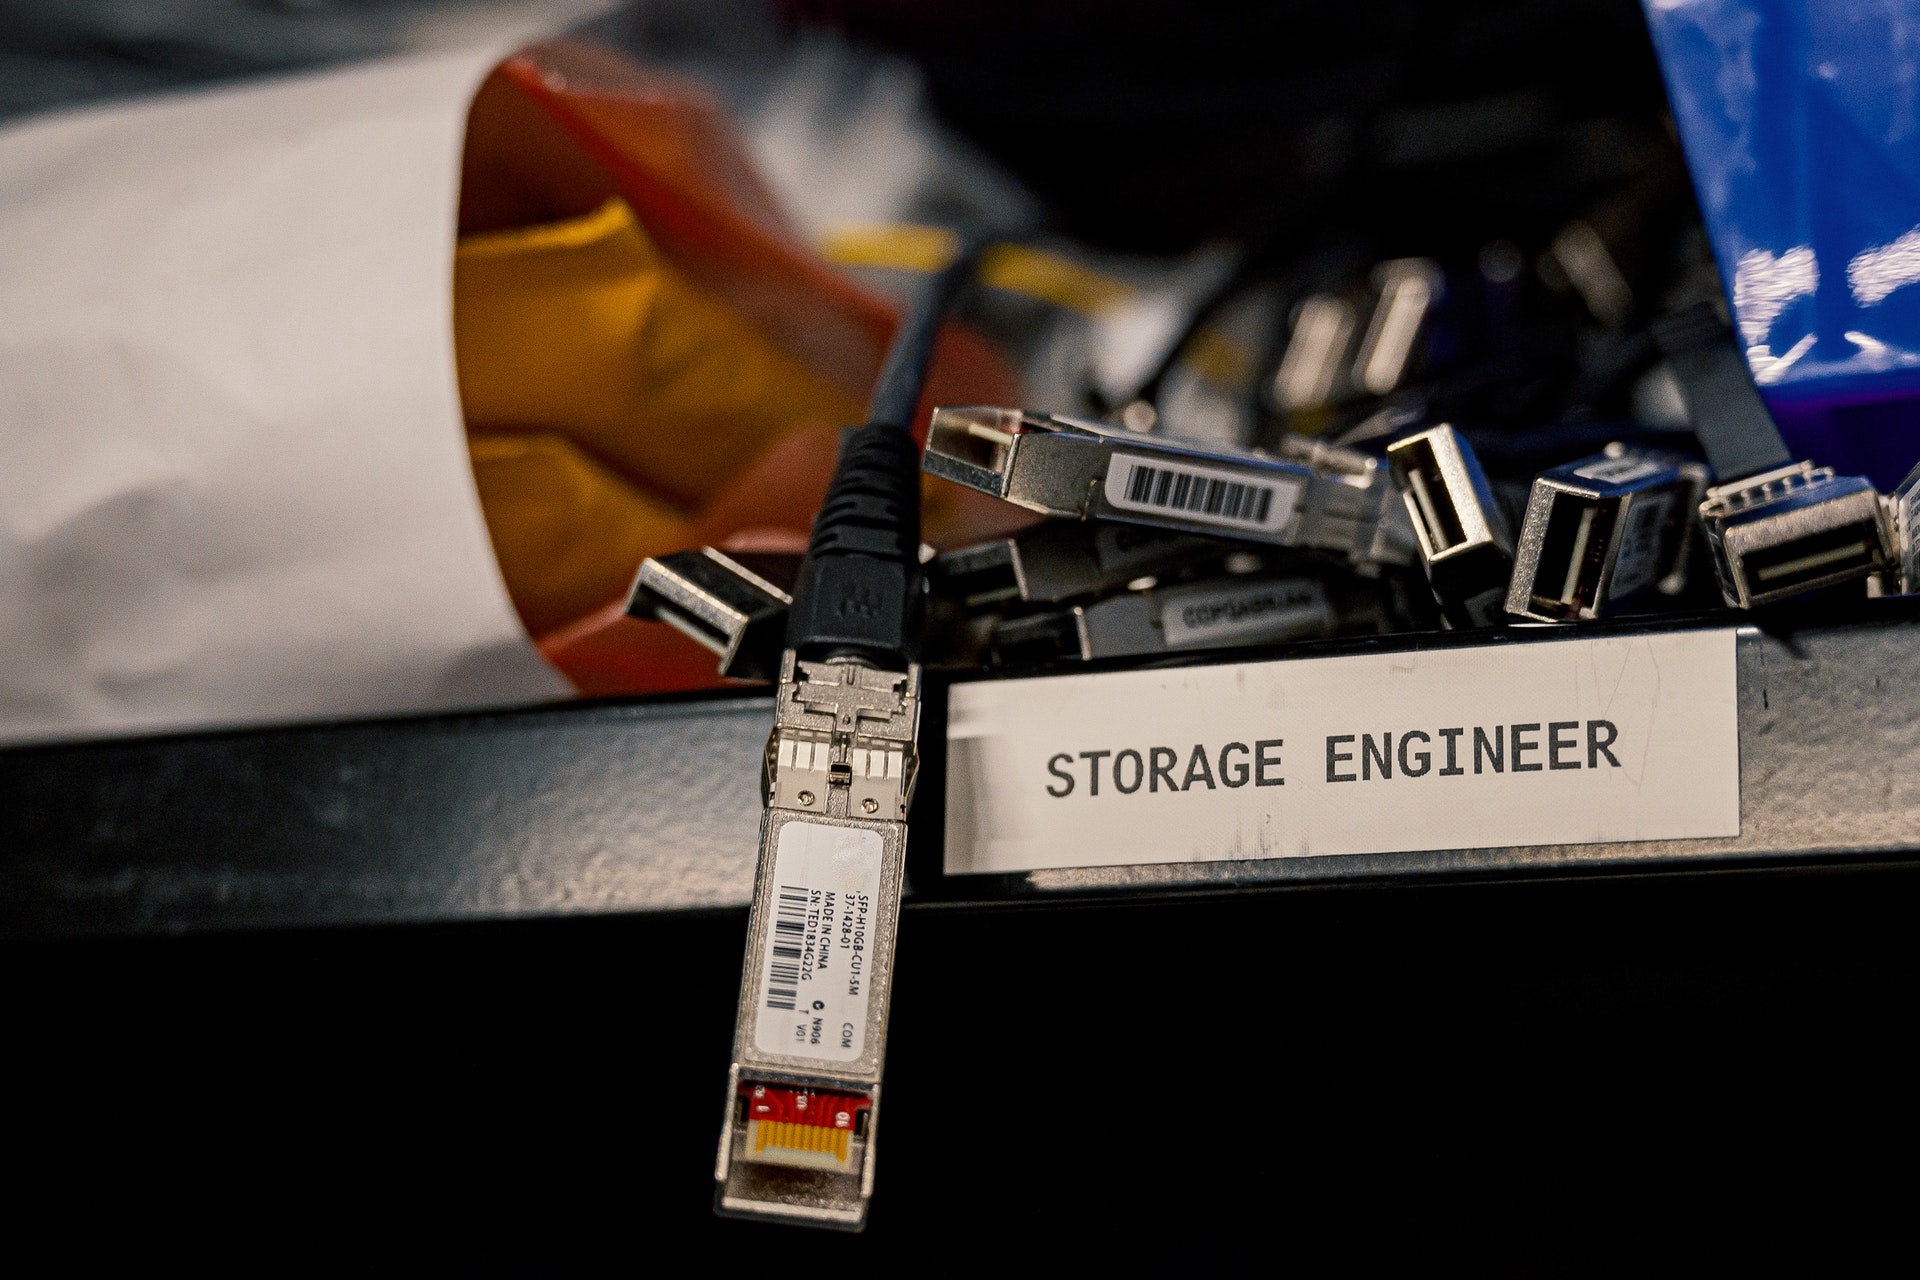 Dispositivi di archiviazione su scaffale con etichetta con scritto "Storage Engineer"